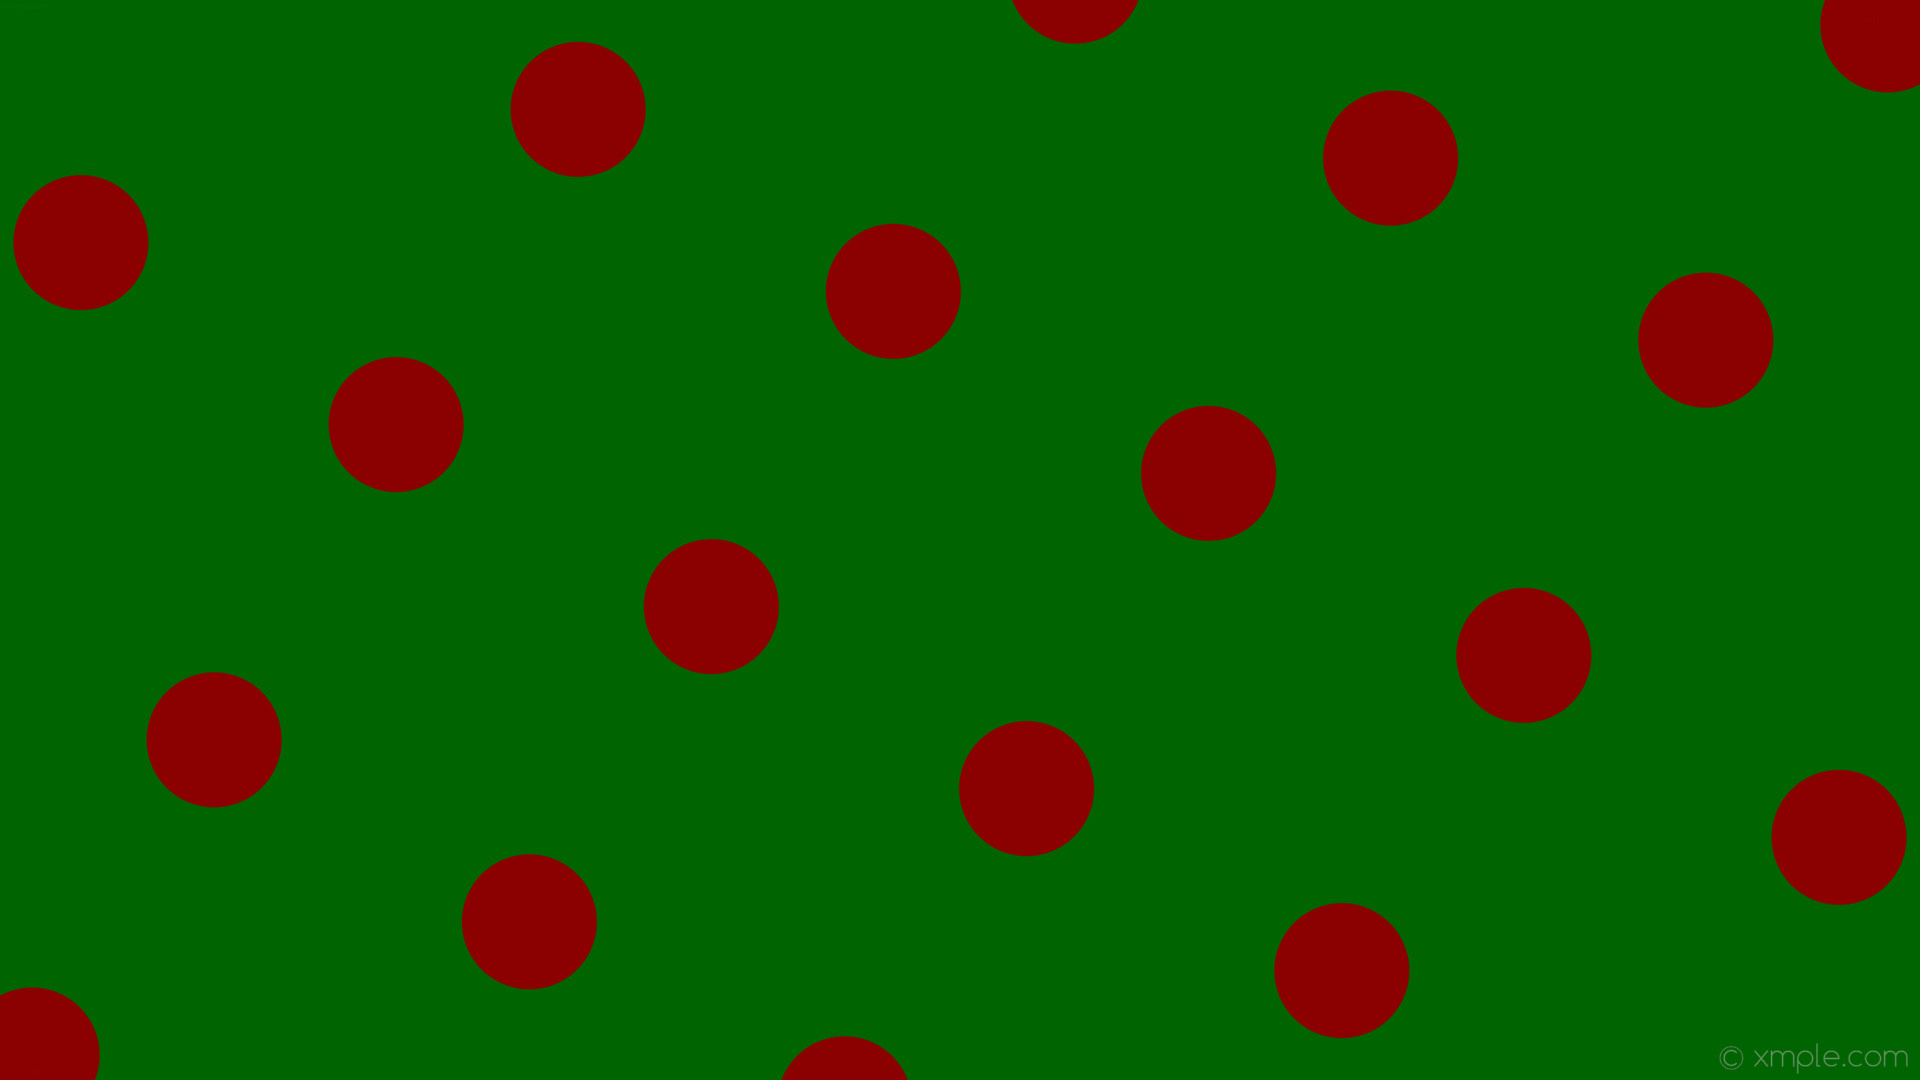 1920x1080 wallpaper green polka dots red spots dark green dark red #006400 #8b0000  240Â°